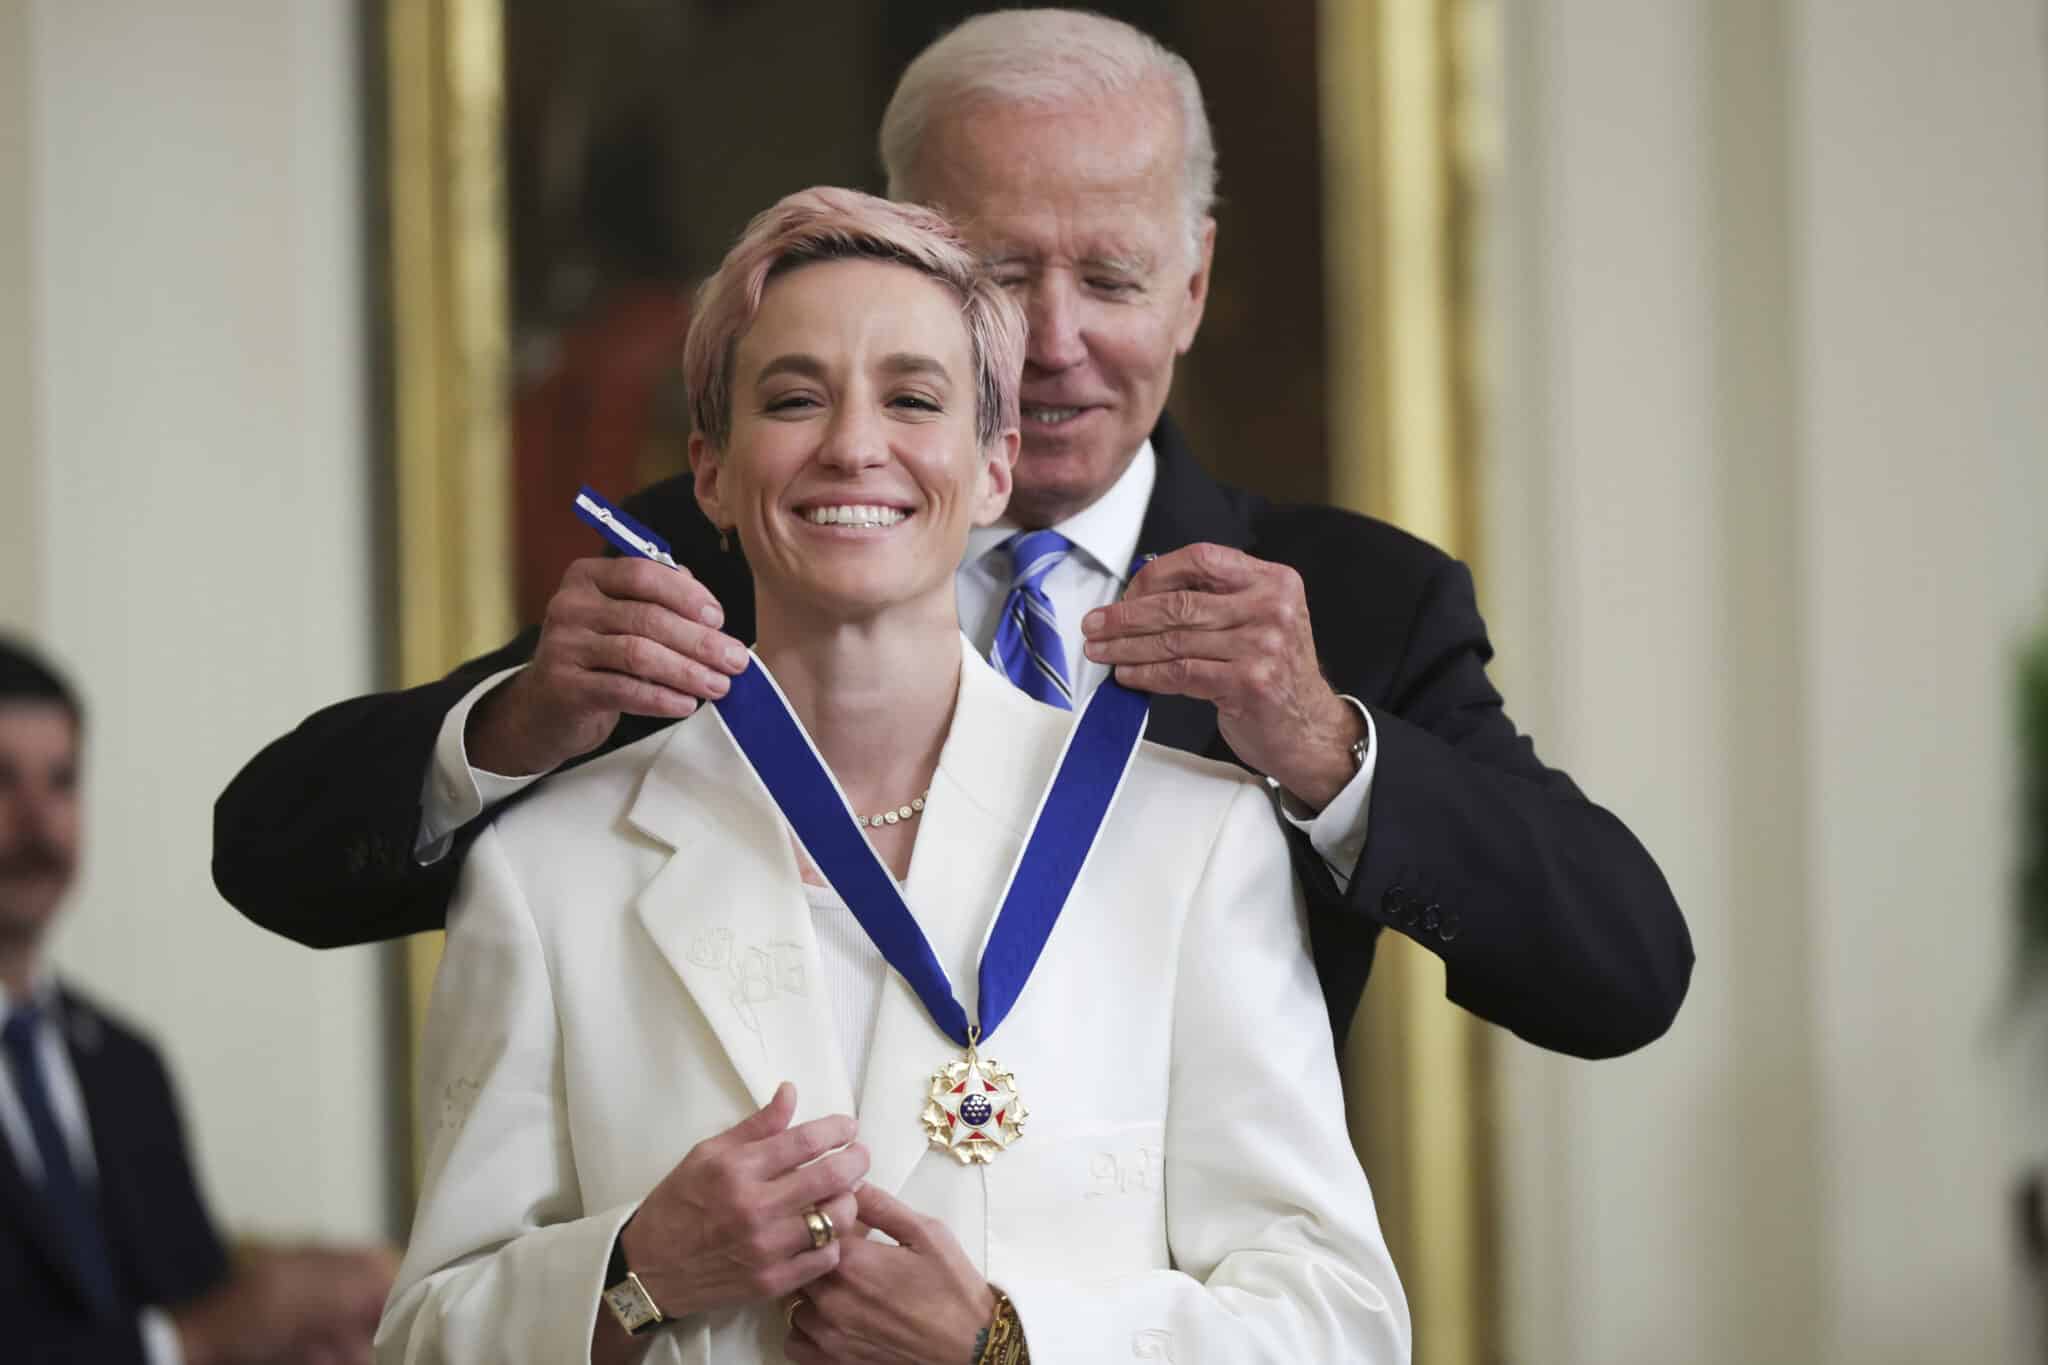 Le président américain Joe Biden remet la Médaille présidentielle de la liberté à Megan Rapinoe, joueuse de football et défenseure de l'égalité salariale entre les sexes, lors d'une cérémonie dans la salle Est de la Maison Blanche le 7 juillet 2022 à Washington, DC. 